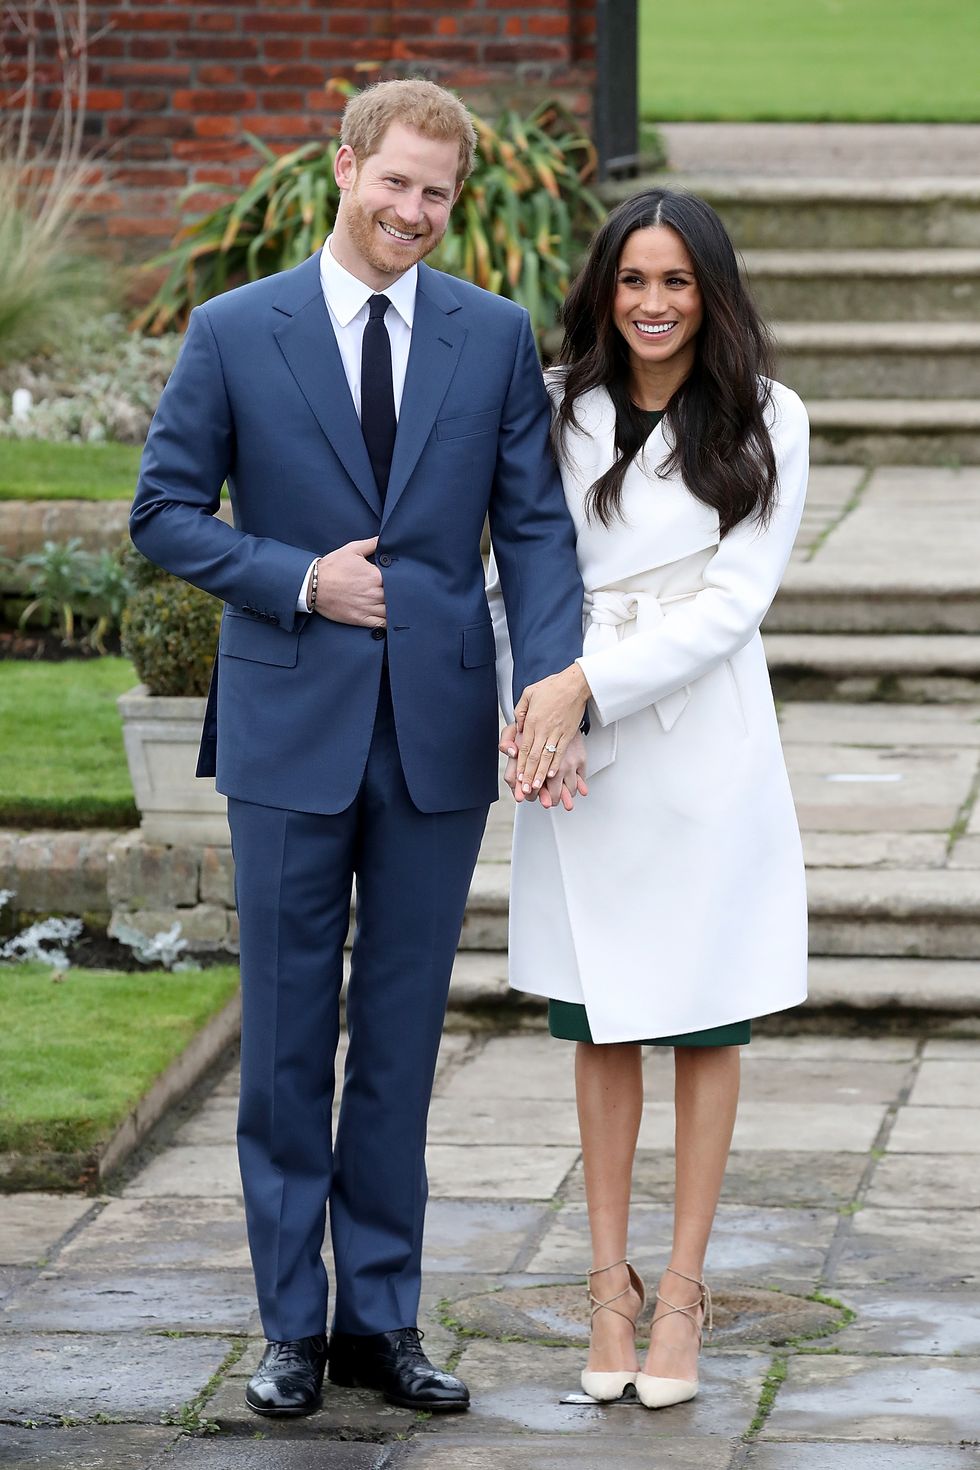 Meghan và Harry nắm tay nhau trong một cuộc gọi điện chính thức để thông báo về việc đính hôn của họ tại Sunken Gardens ở Cung điện Kensington. Cô mặc áo khoác dài màu trắng và giầy tông xuyệt tông